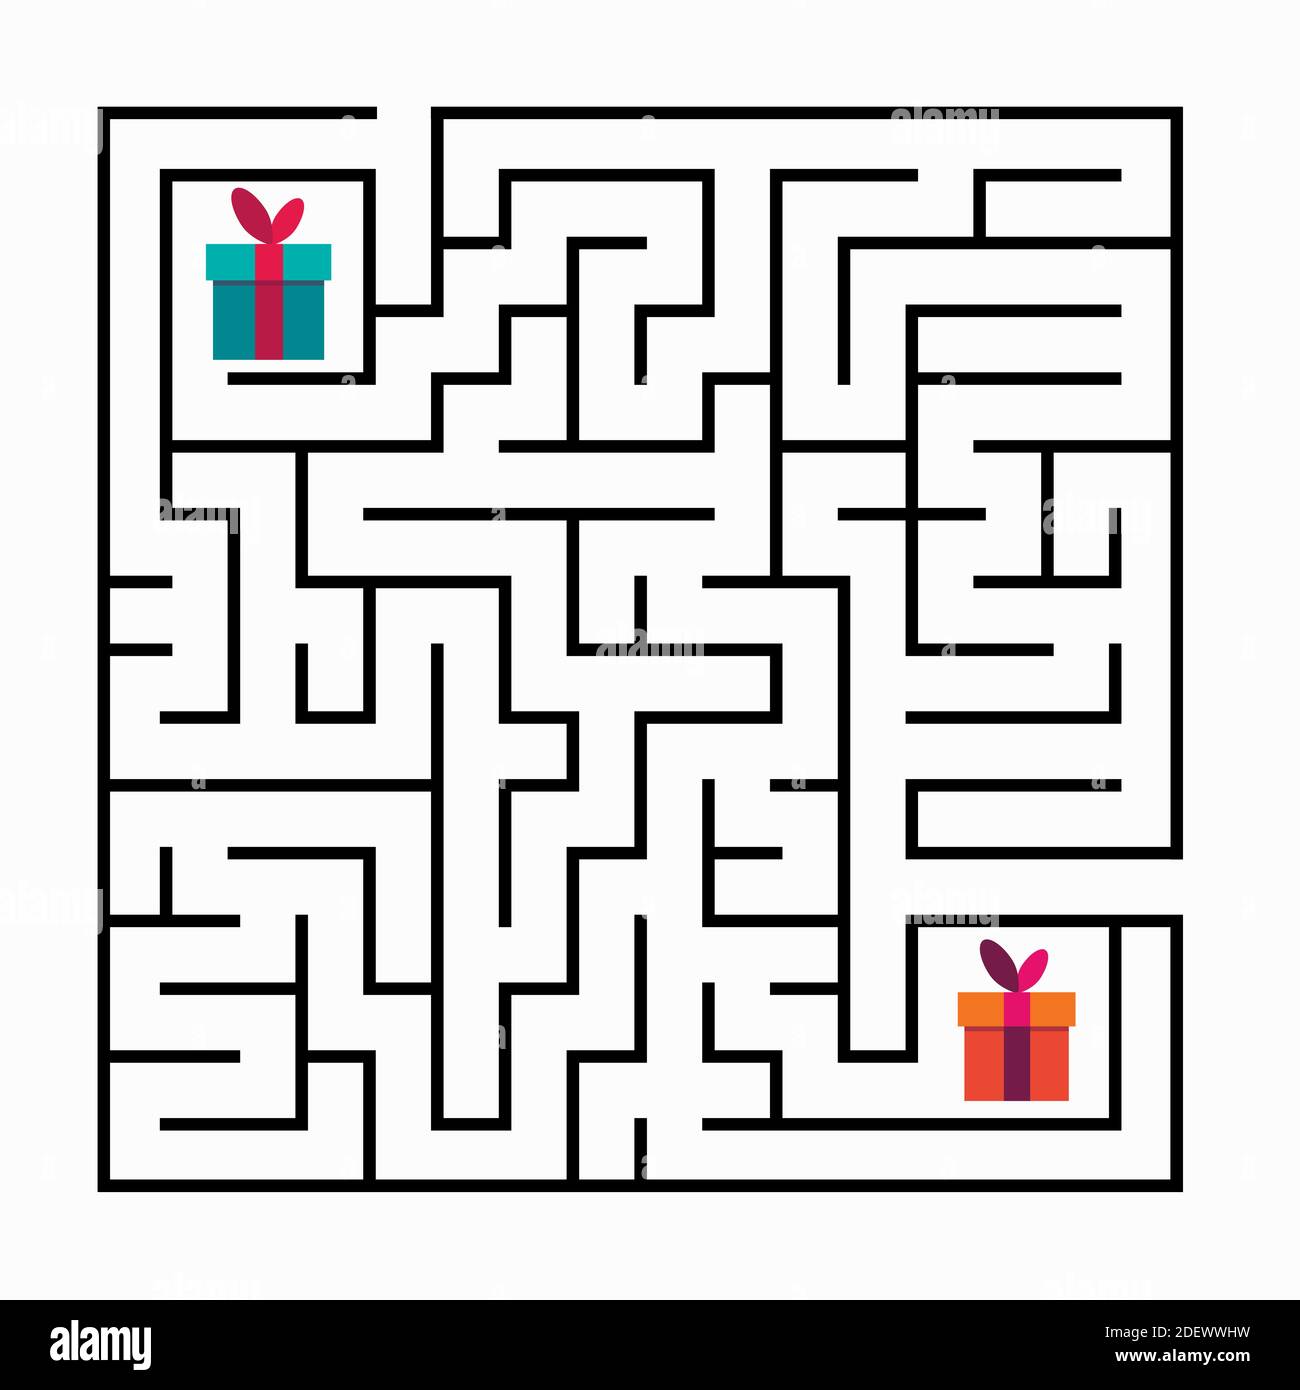 Labirinto quadrato gioco labirinto per bambini. Logica labirintica. Due ingressi e due vie giuste per andare. Immagine piatta vettoriale Illustrazione Vettoriale